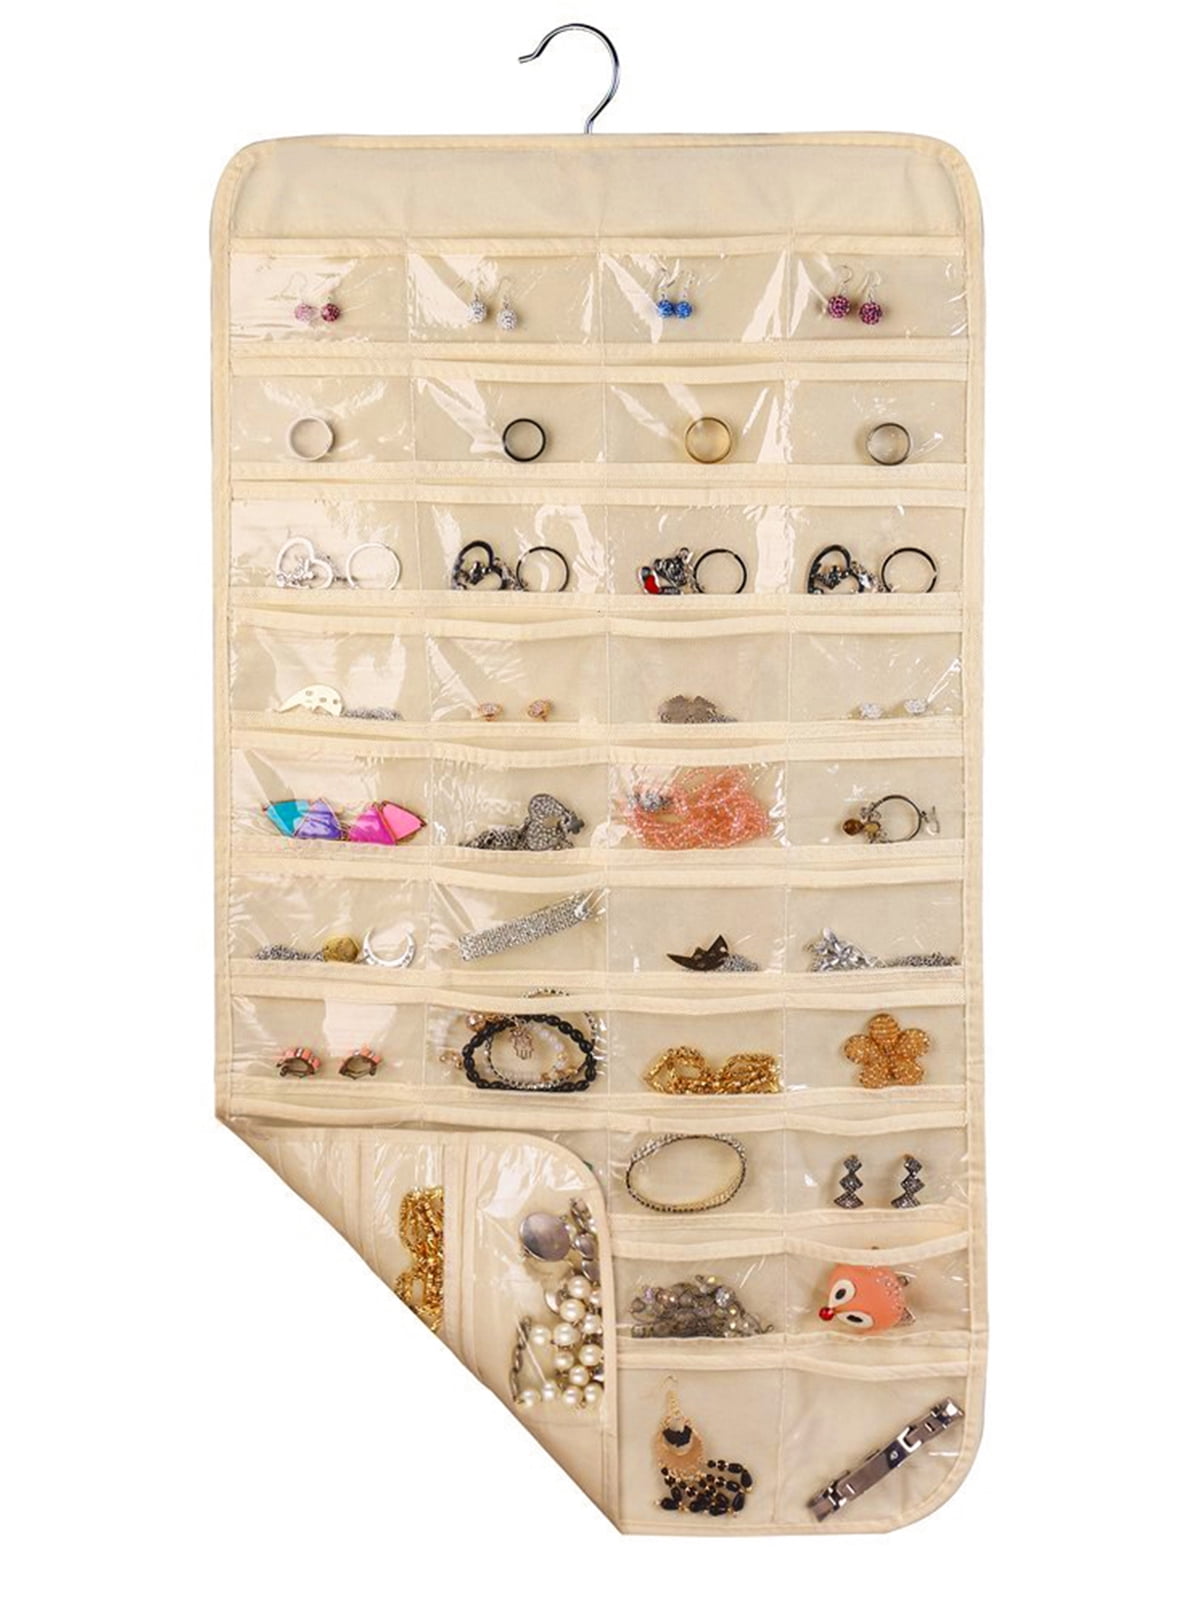 Tinksky 240pcs Small Business Jewelry Storage Bags Small Jewelry Bags for Jewelry Earrings, Adult Unisex, Size: 7.09 x 5.12 x 2.36, Grey Type